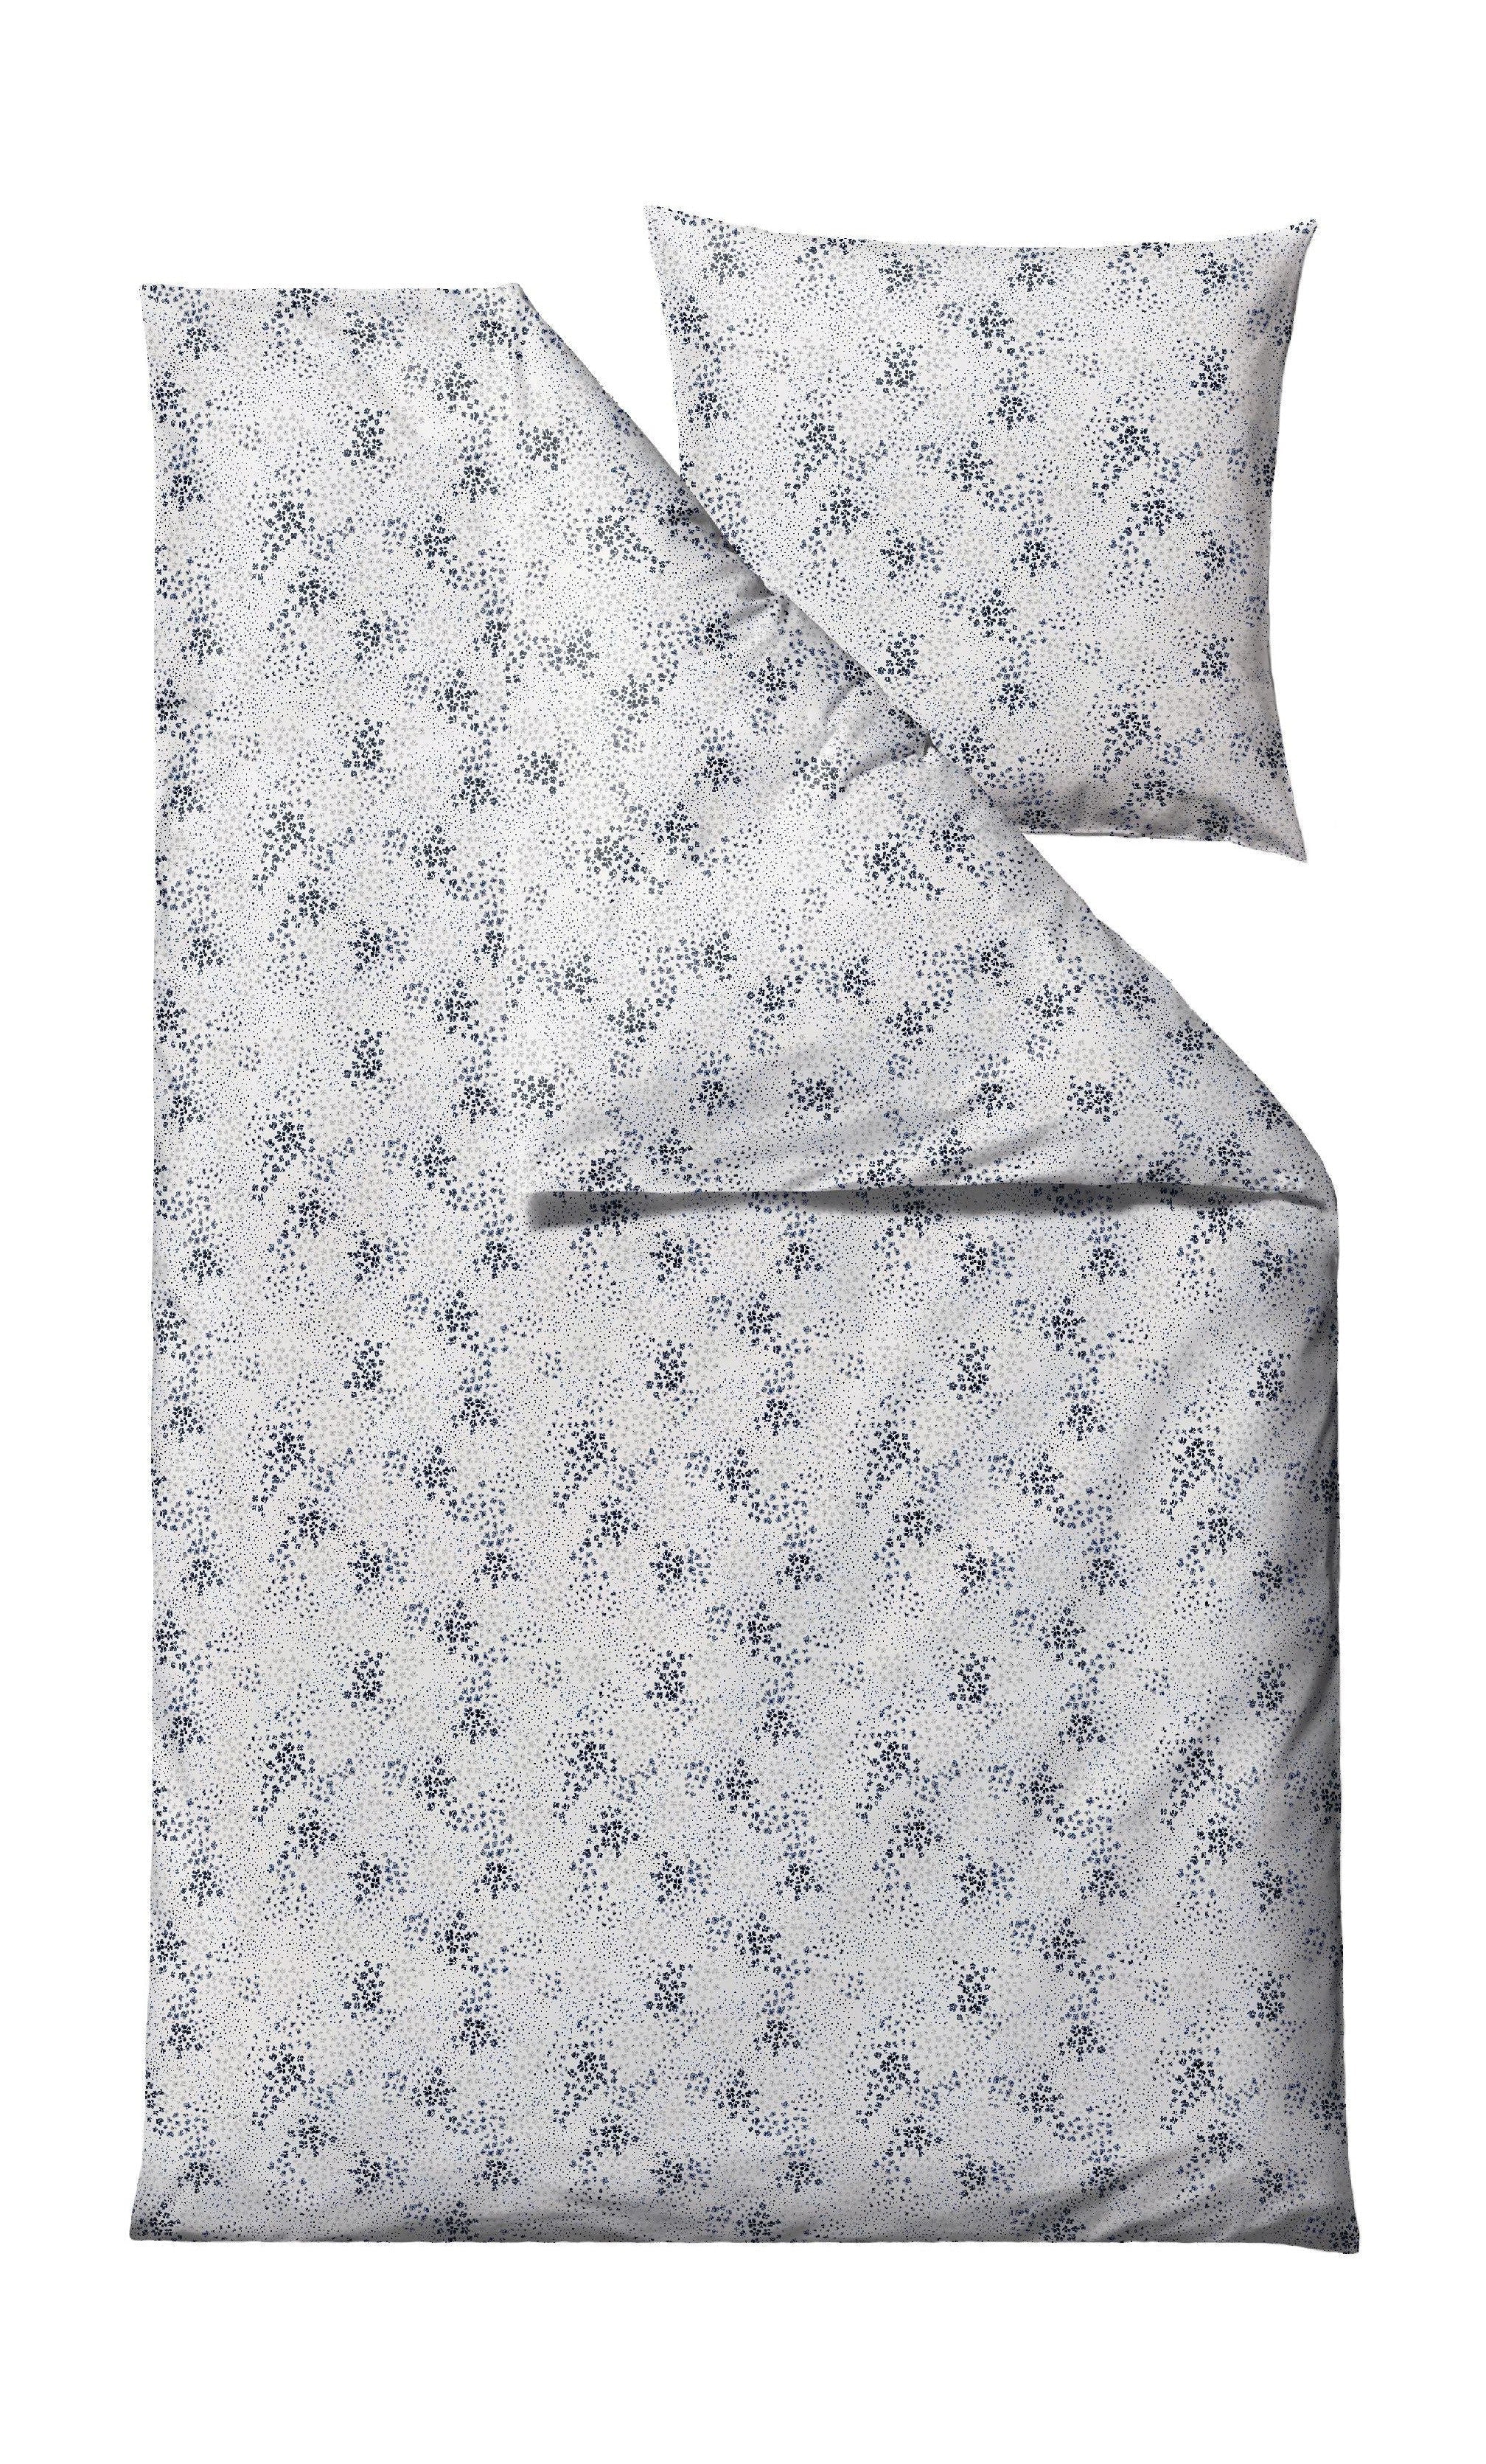 Söstahl viola sängkläder 140 x 200 cm, blå